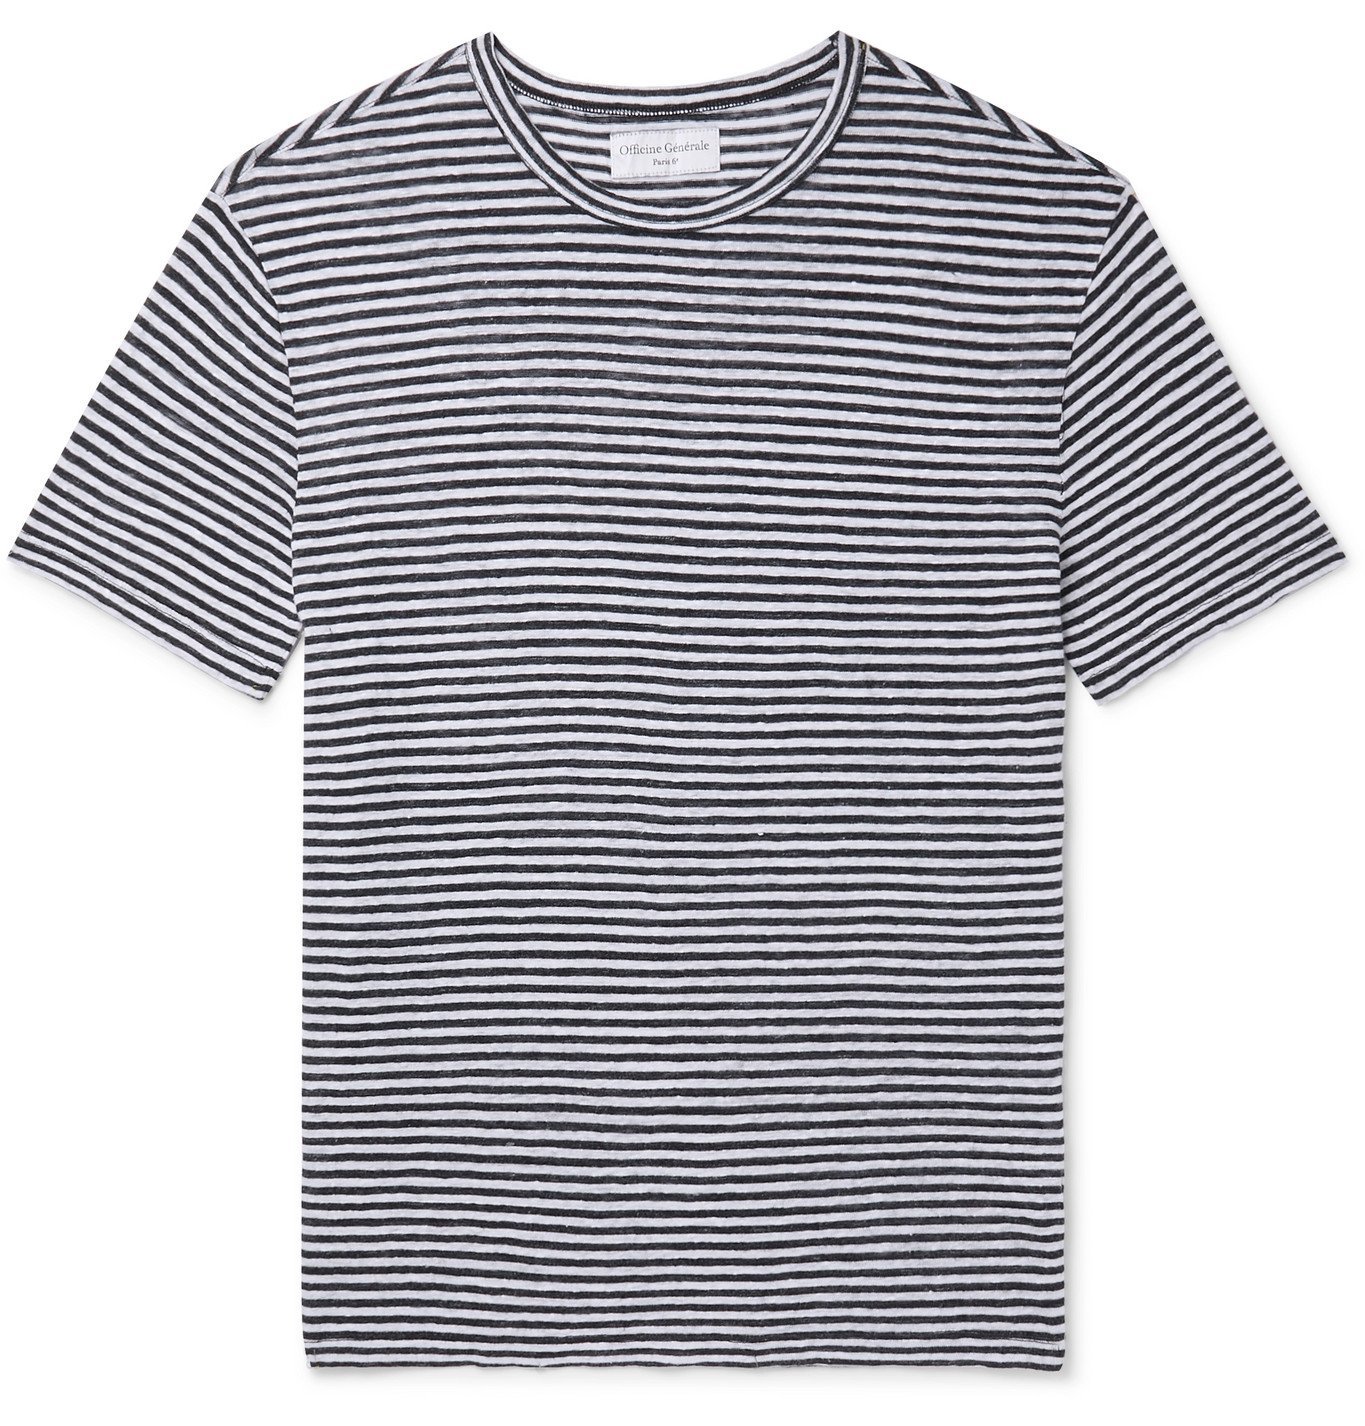 OFFICINE GÉNÉRALE - Striped Linen T-Shirt - Multi Officine Creative